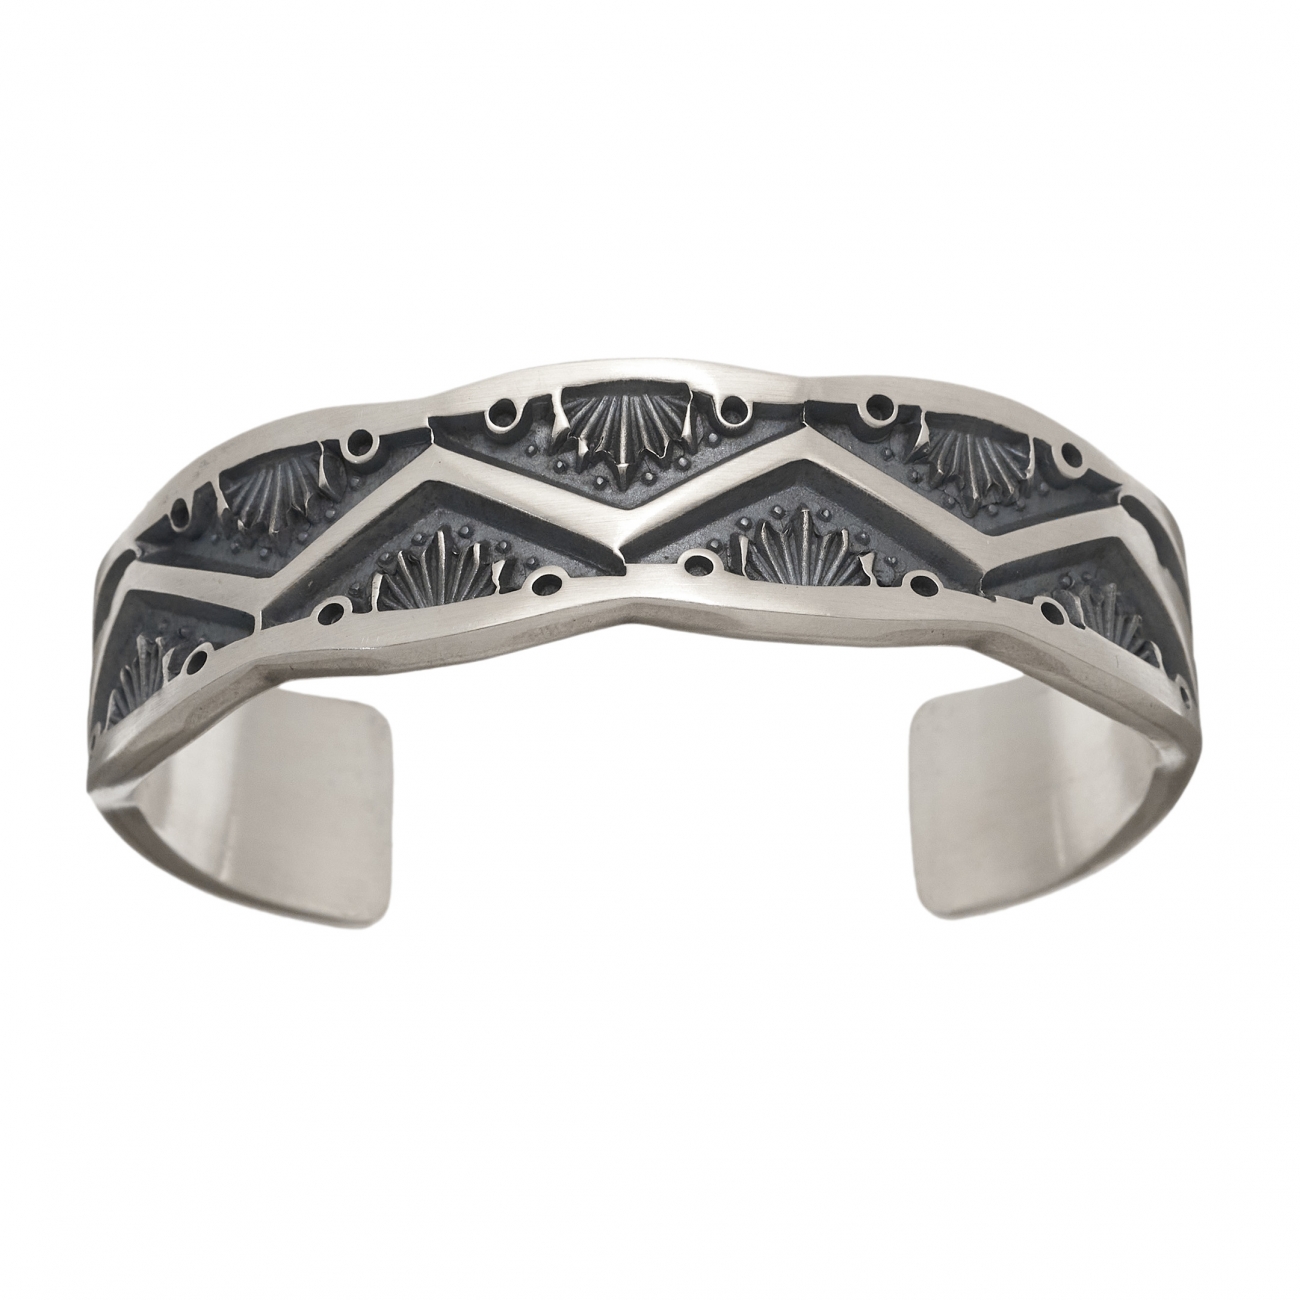 Navajo bracelet in mat silver BR713 - Harpo Paris